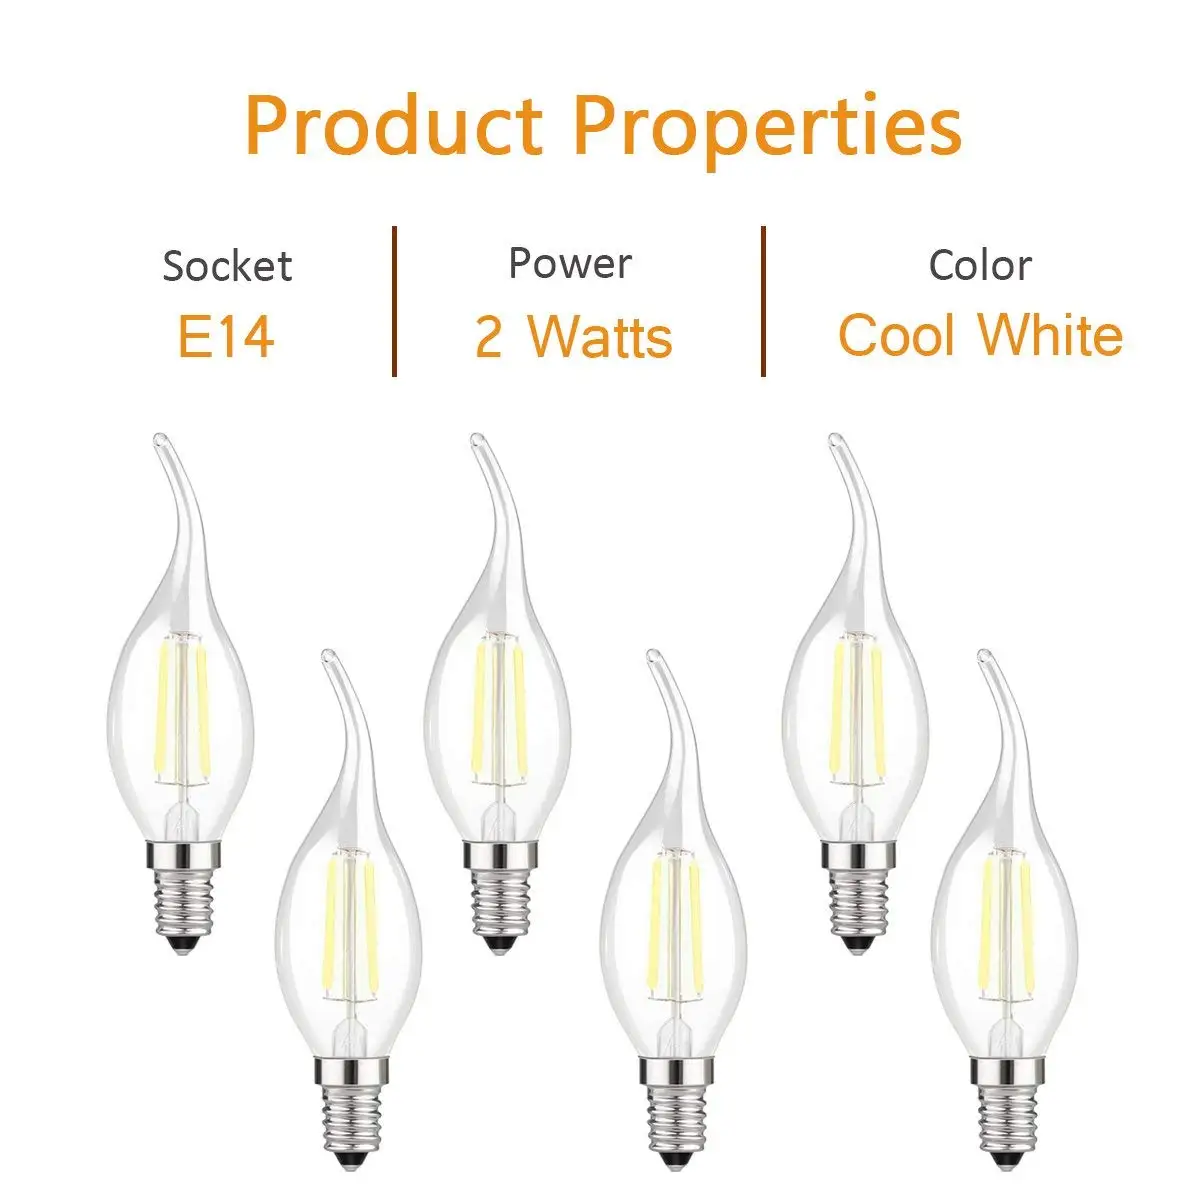 Светодиодный лампочки накаливания 2/4 W E14 ясно лампы в форме свечи Маленький Винт C35 теплый/холодный белый люстра лампа, 20/эквивалент 40 Вт, 6 шт. в упаковке